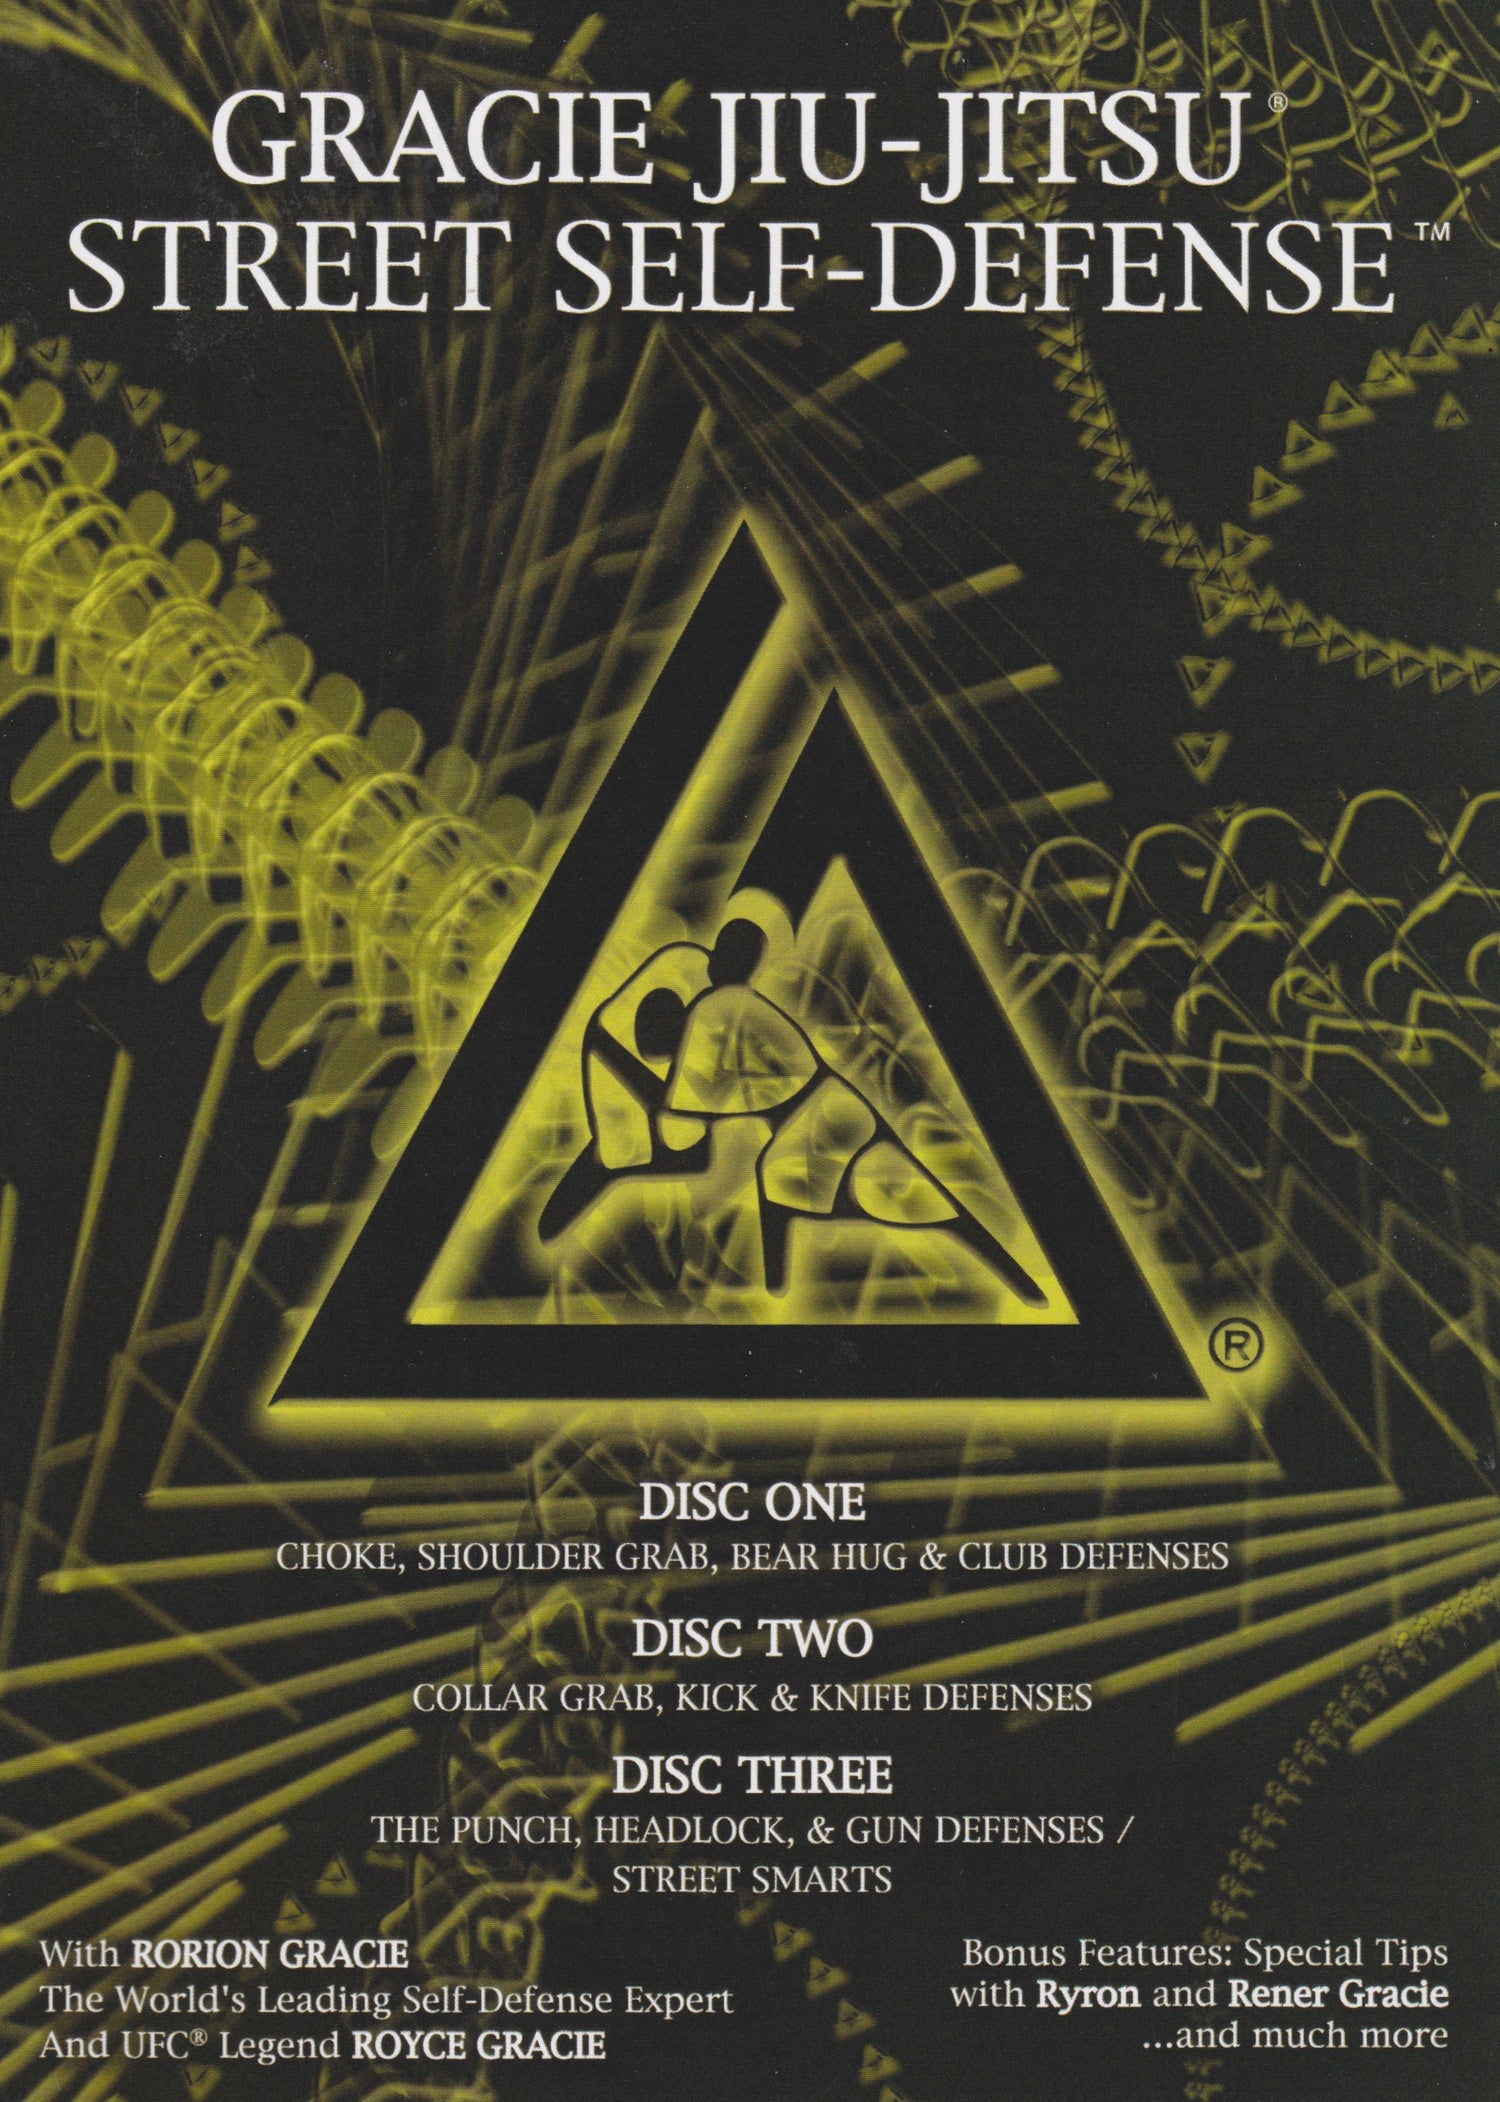 グレイシー柔術セルフ ディフェンス ロリオン & ロイス グレイシー DVD 3 セット